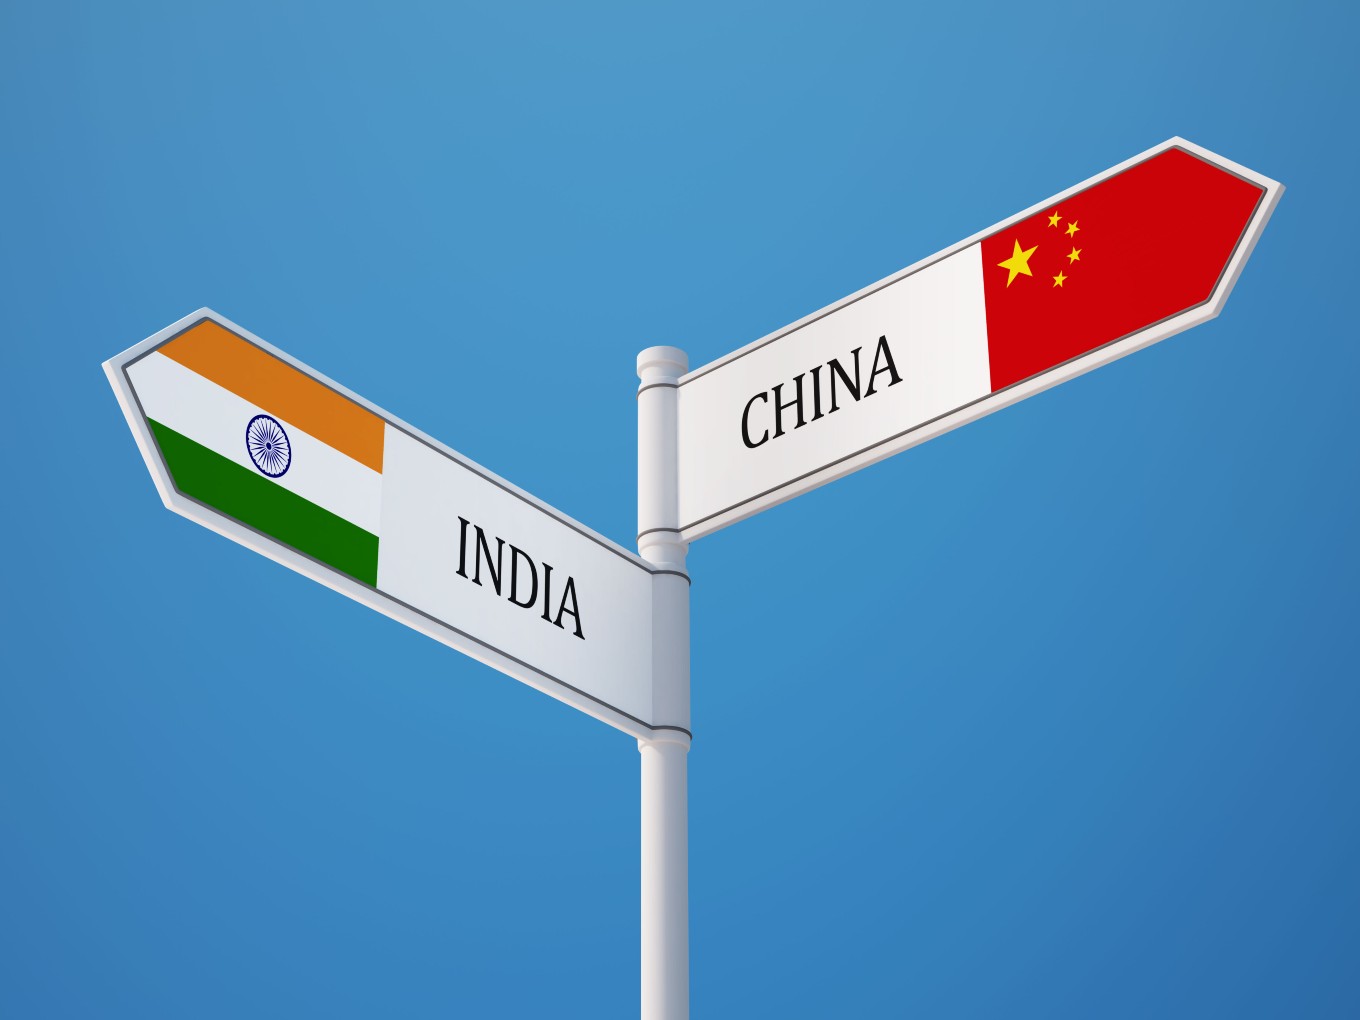 Ấn Độ cũng đã chặn hơn 300 ứng dụng có liên kết với Trung Quốc trong những năm gần đây để bảo vệ chủ quyền và toàn vẹn của quốc gia. Ảnh: @AFP.